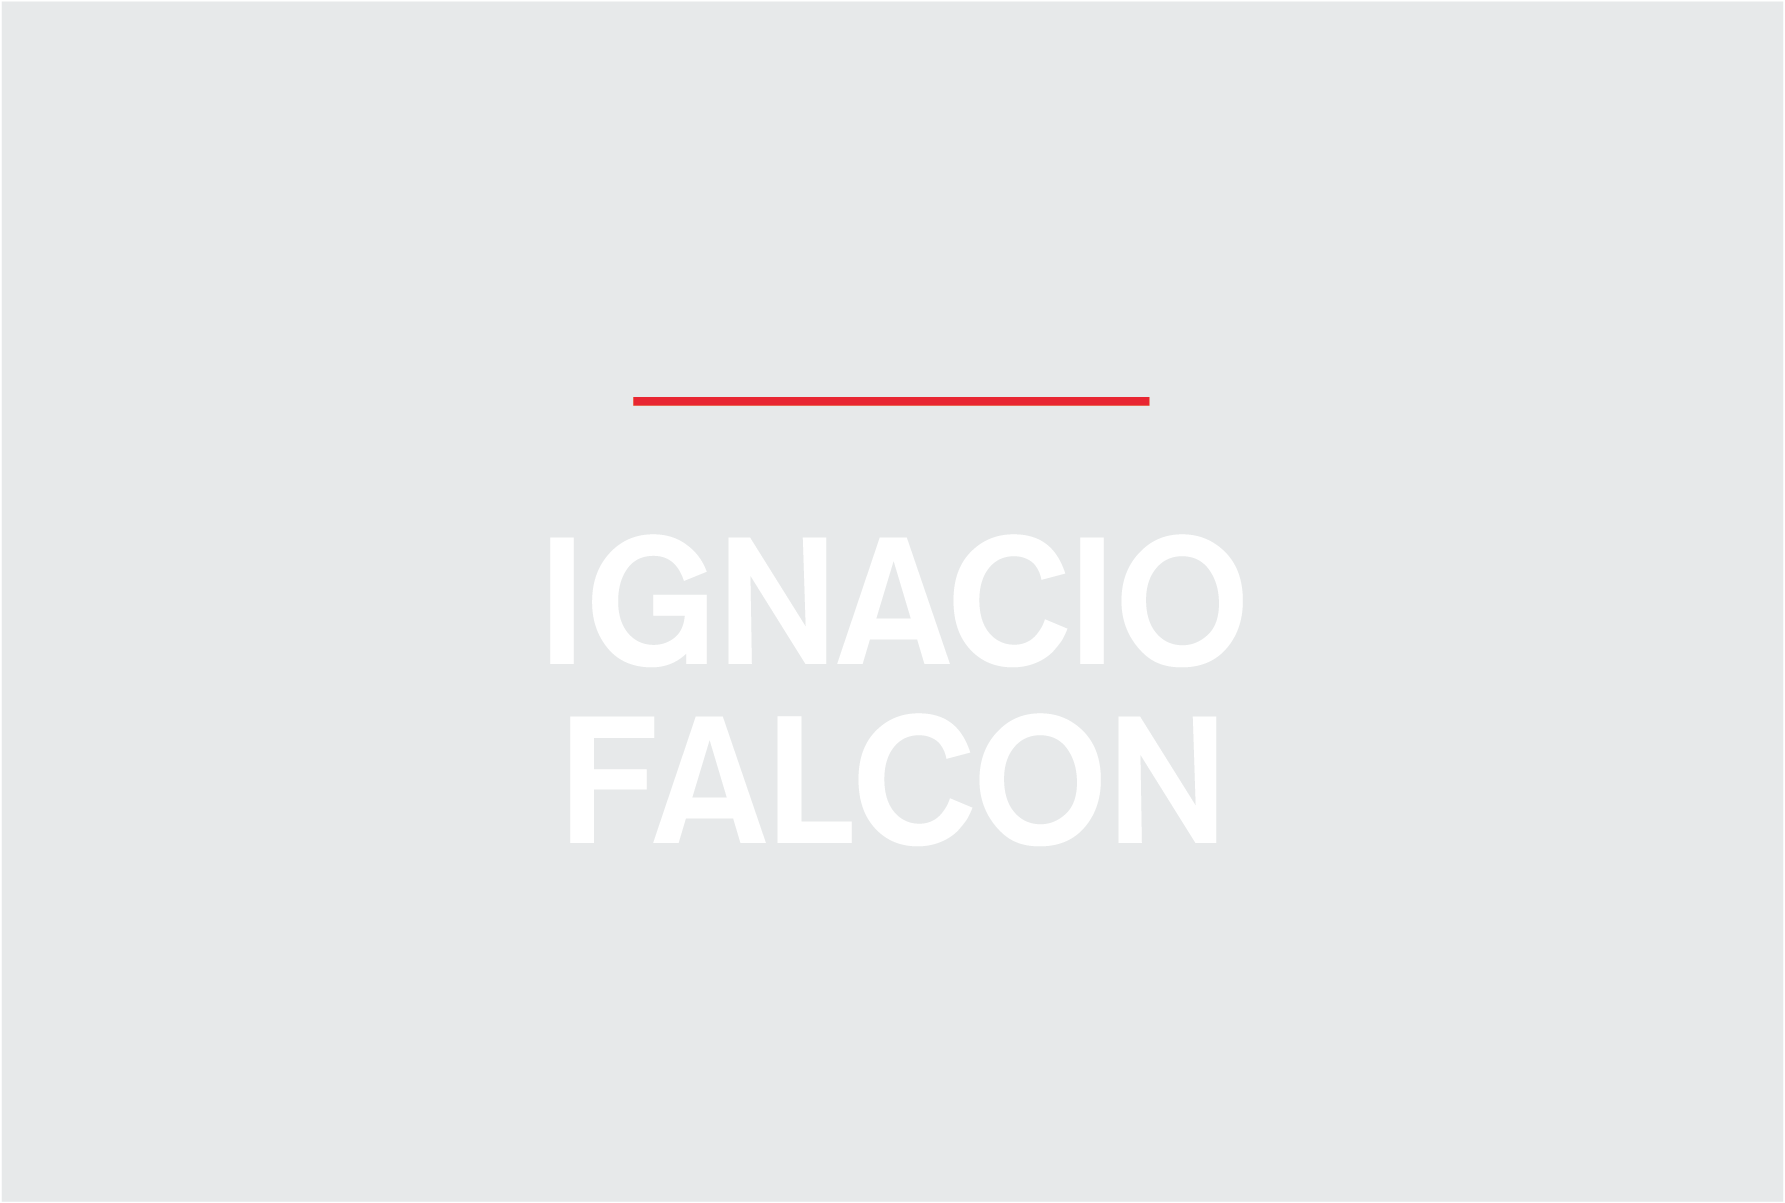 nombre_provisorio_Ignacio-Falcon